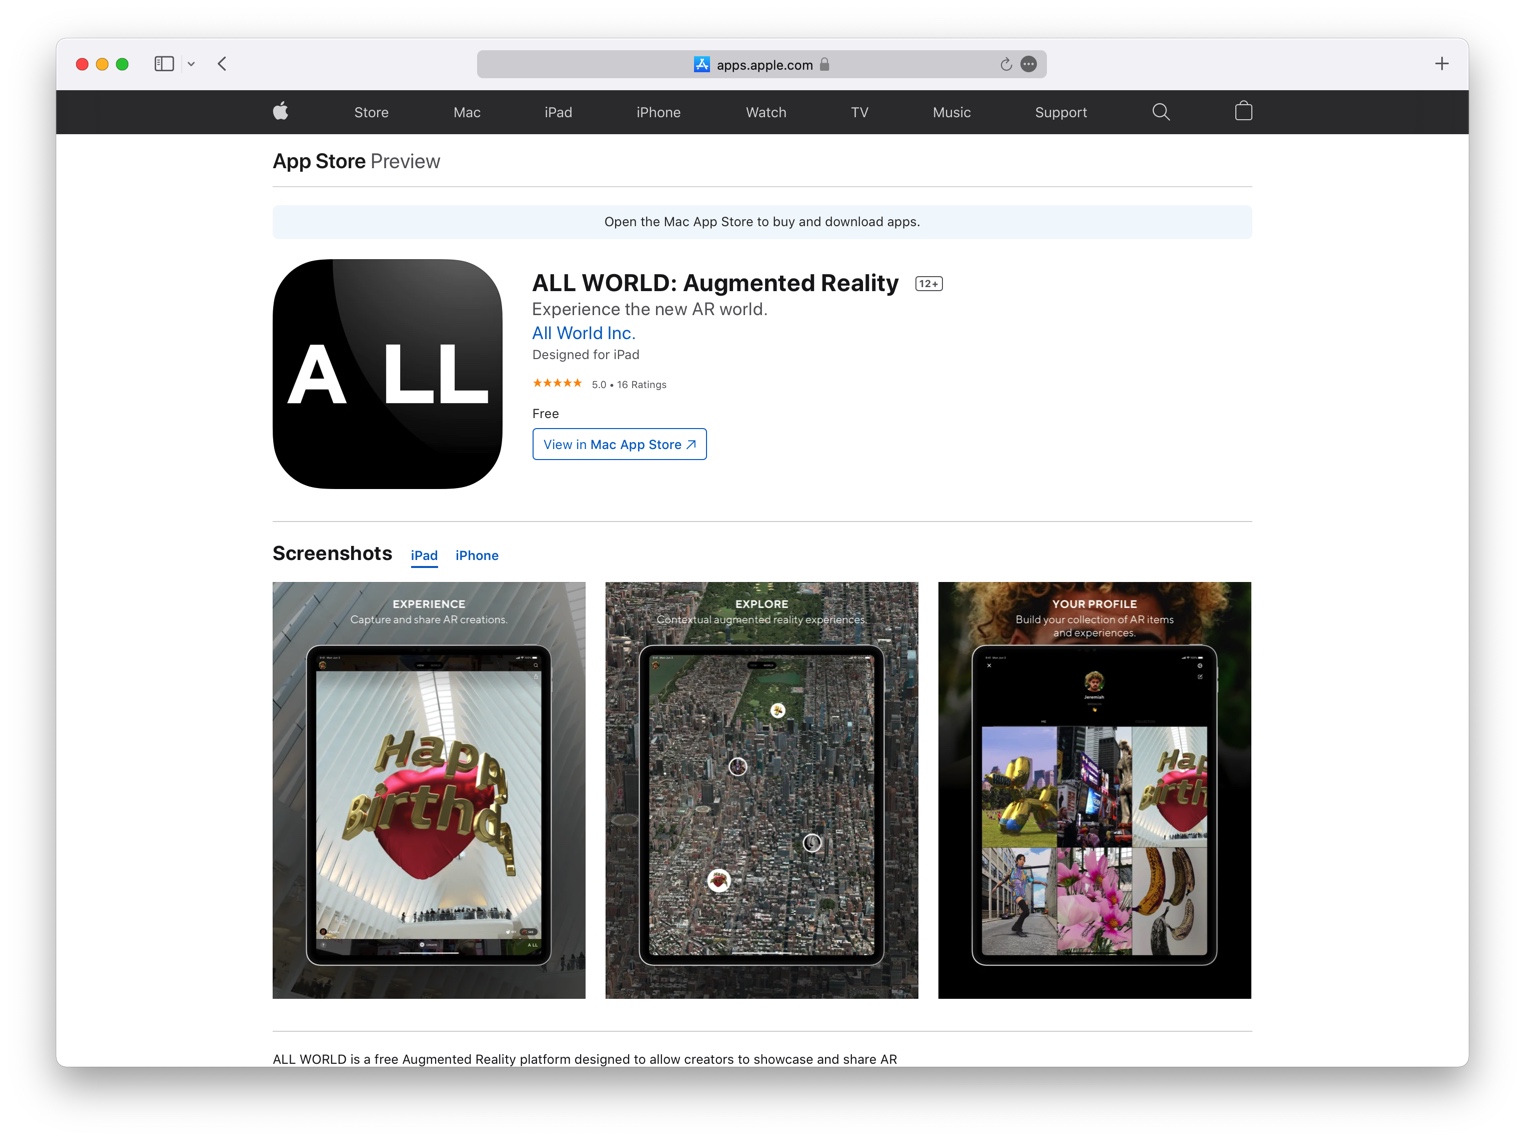 All World app store screenshot